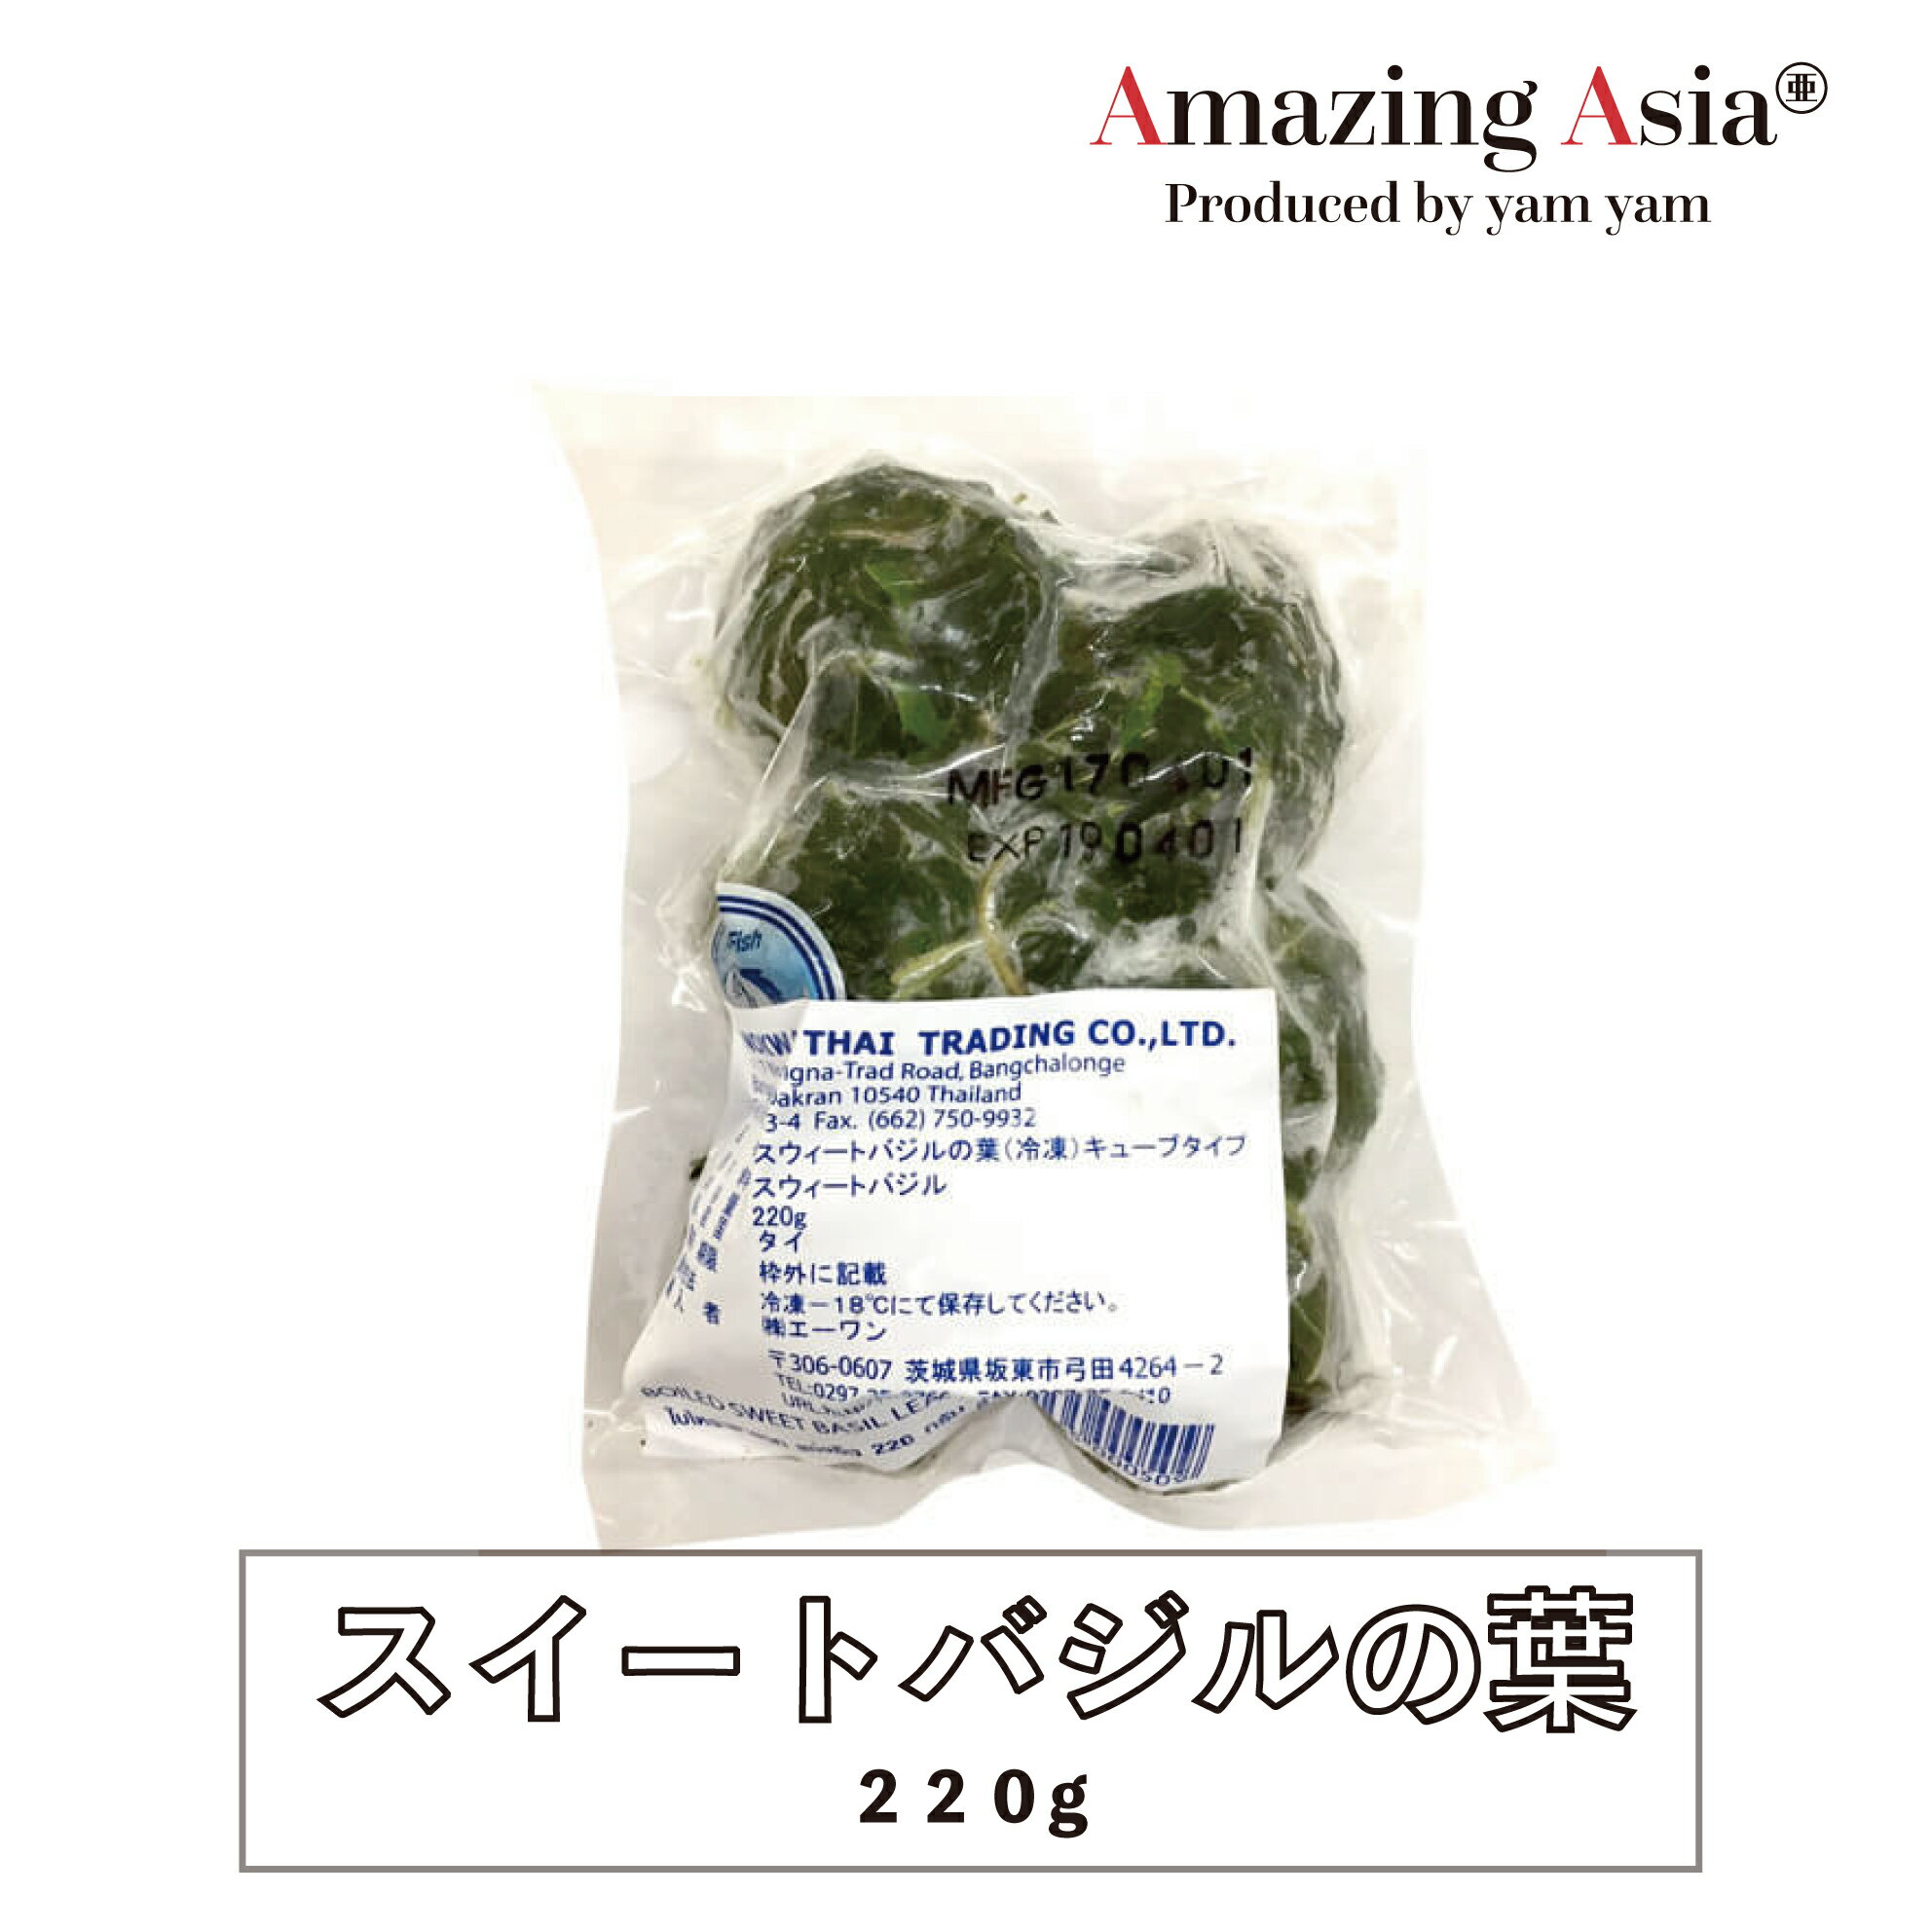 スイートバジルの葉 (キューブタイプ) 220g ハーブ 生野菜 タイ タイ料理 本格 アジア アジアン バンコク エスニック イタリアン 冷凍